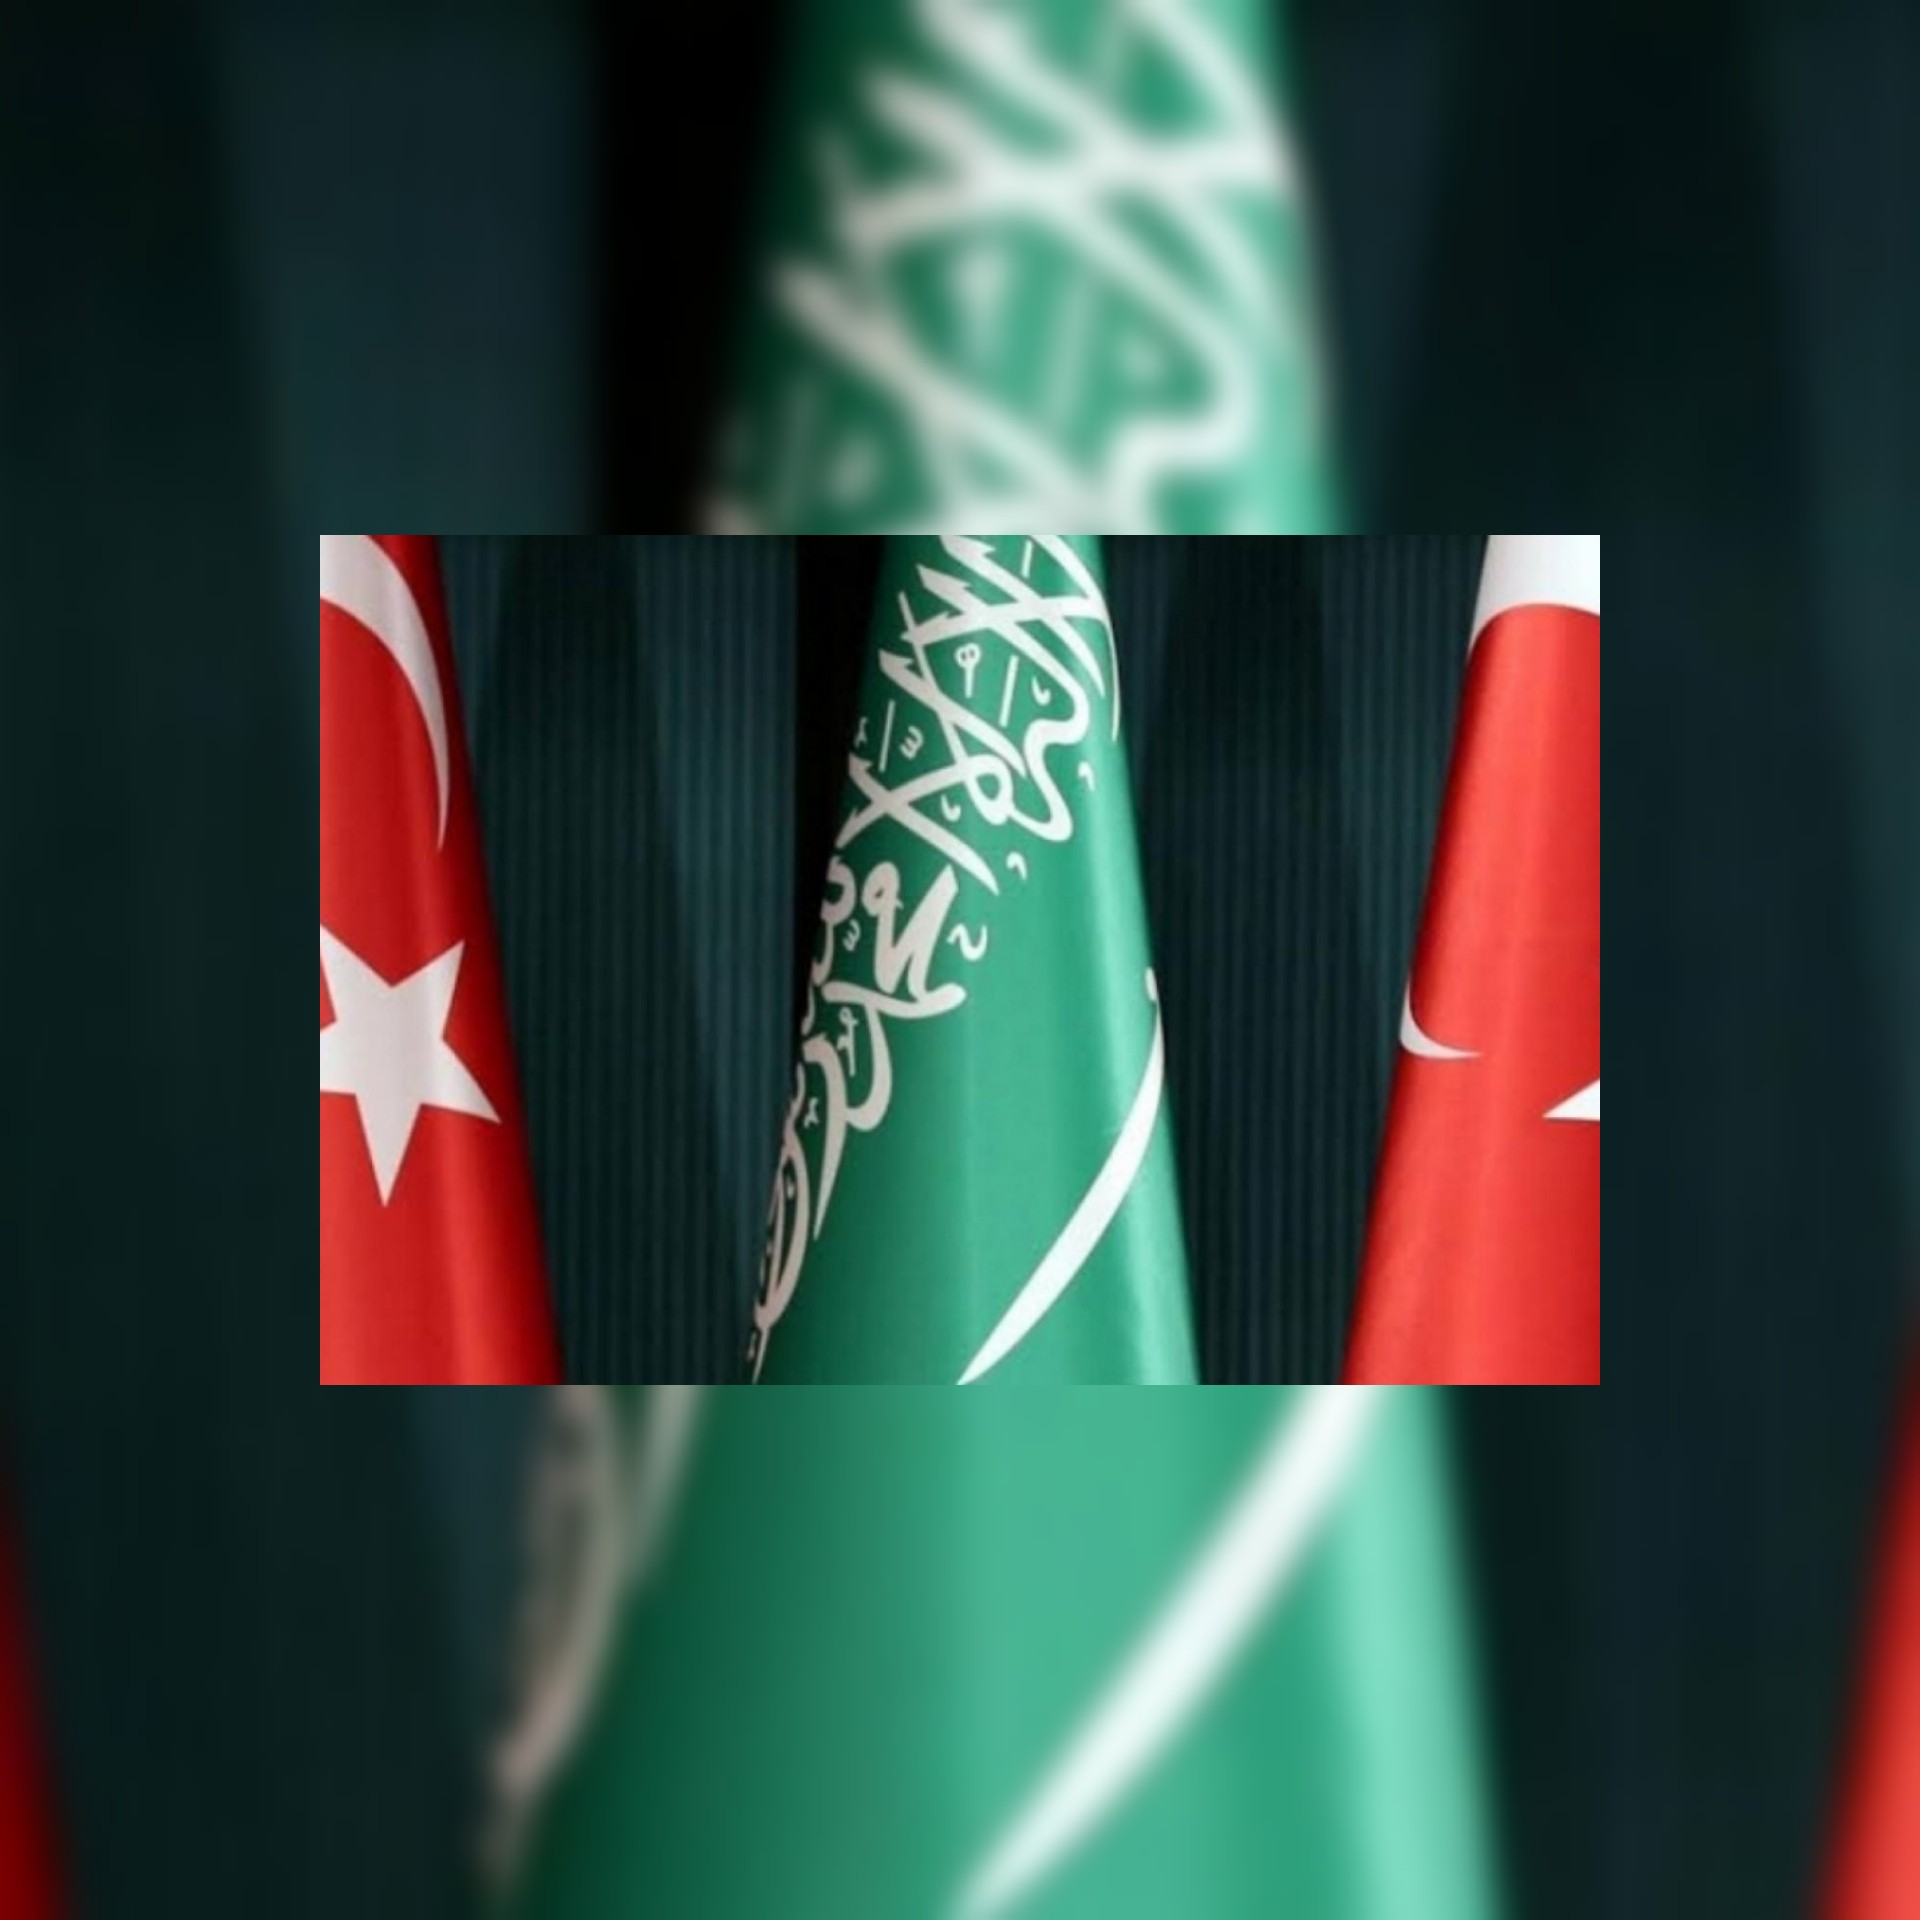 باقل من شهر وللمرة الثانية الرئاسة التركية: الملك سلمان وأردوغان ناقشا العلاقات الثنائية في اتصال